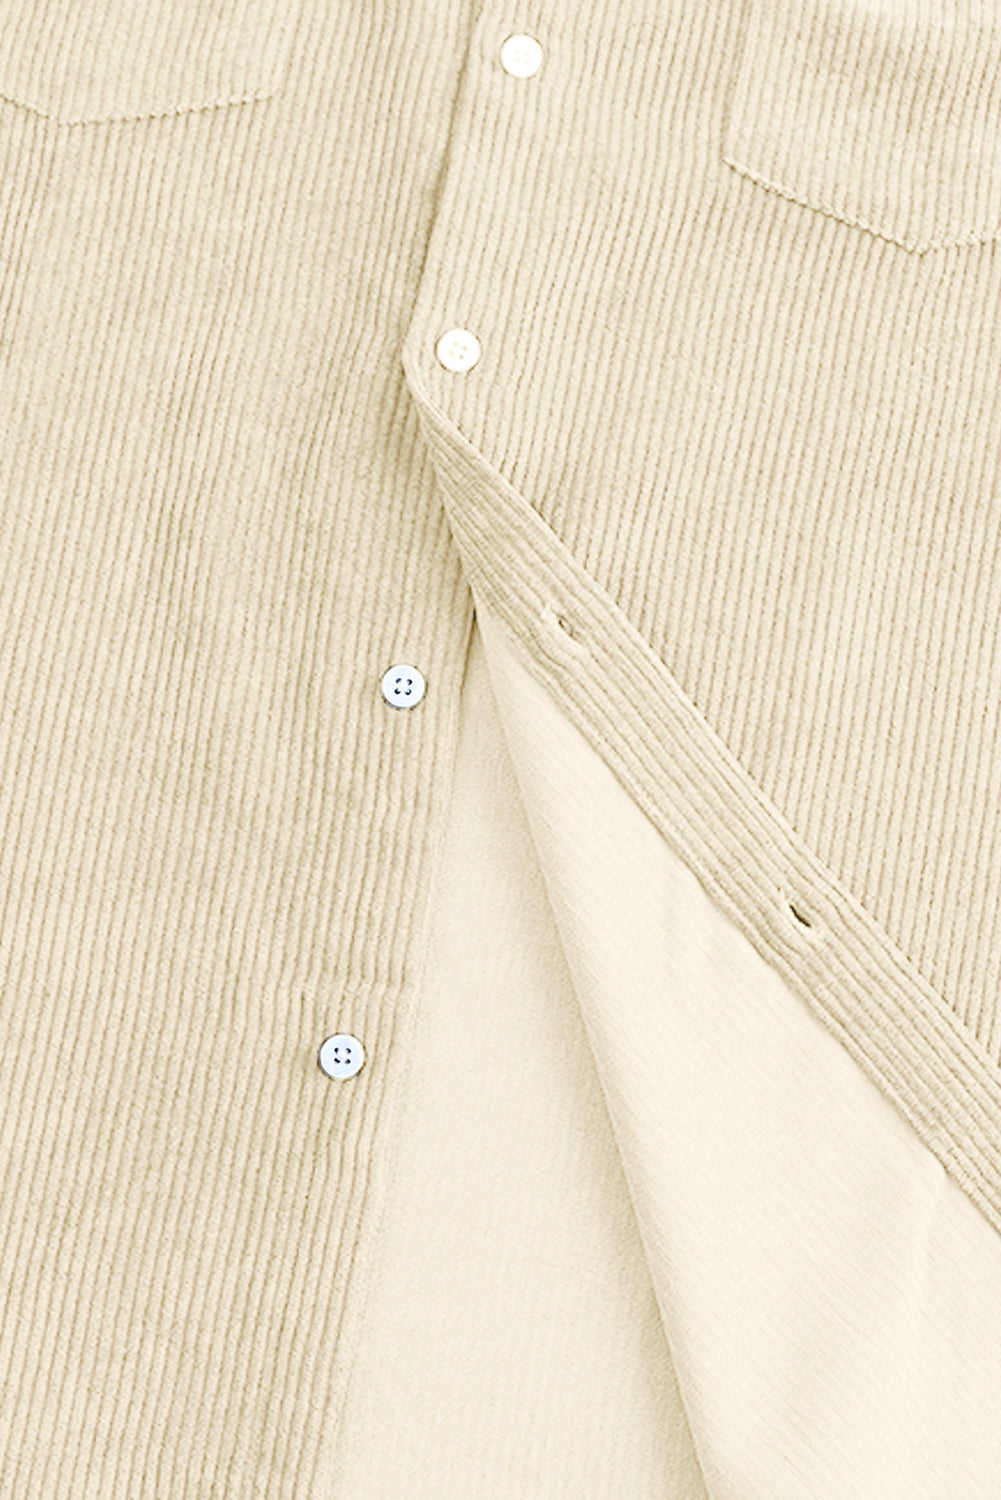 Apricot Men Corduroy Flap Pocket Button Front Shirt Men's Tops JT's Designer Fashion